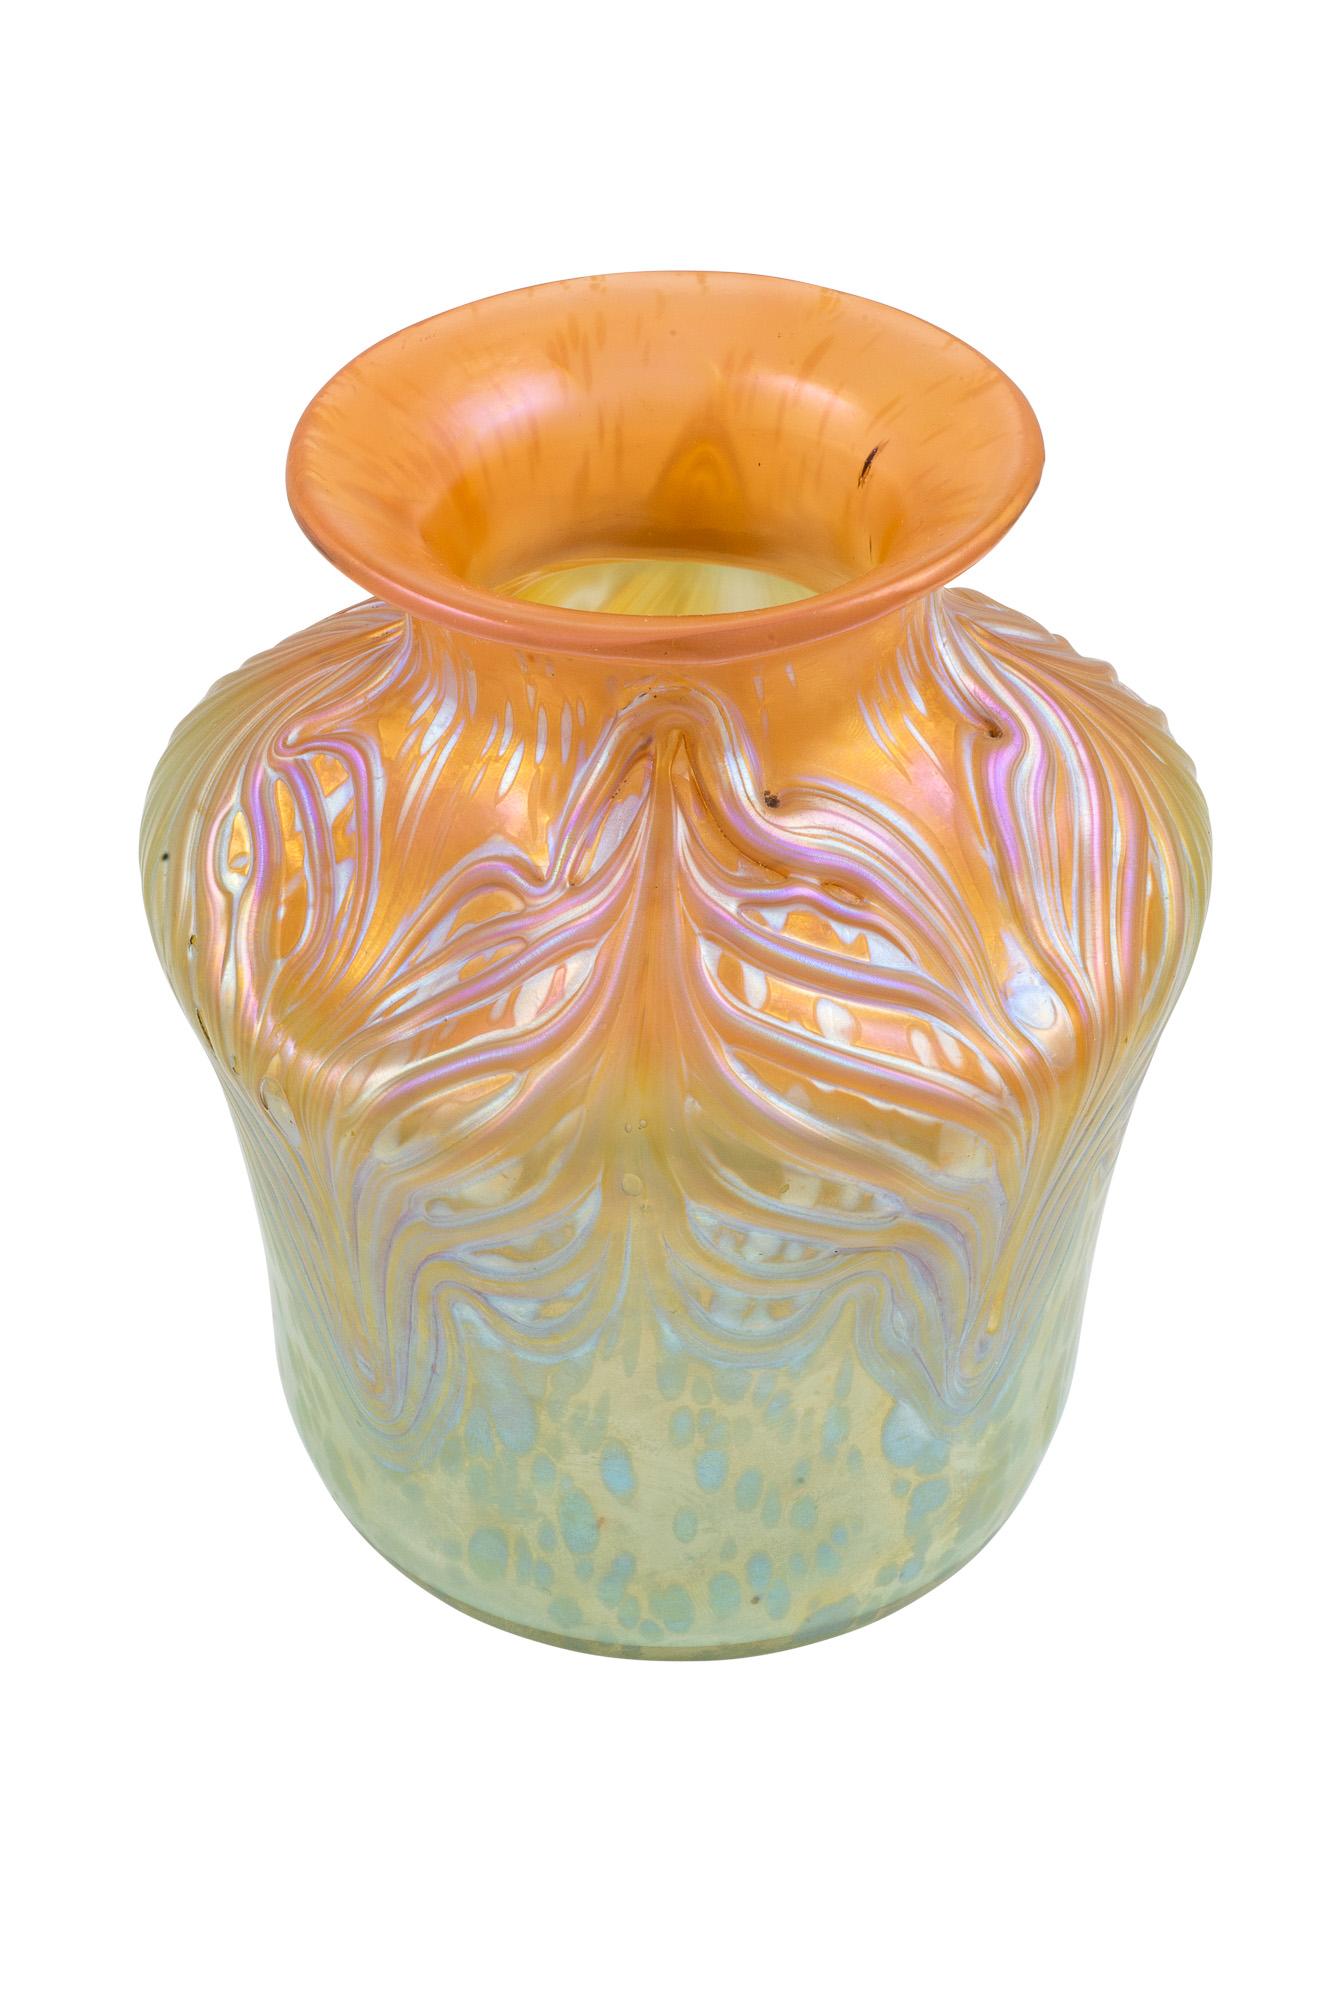 Art Nouveau Johann Loetz Witwe Vase Unknown Decor circa 1900 Signed For Sale